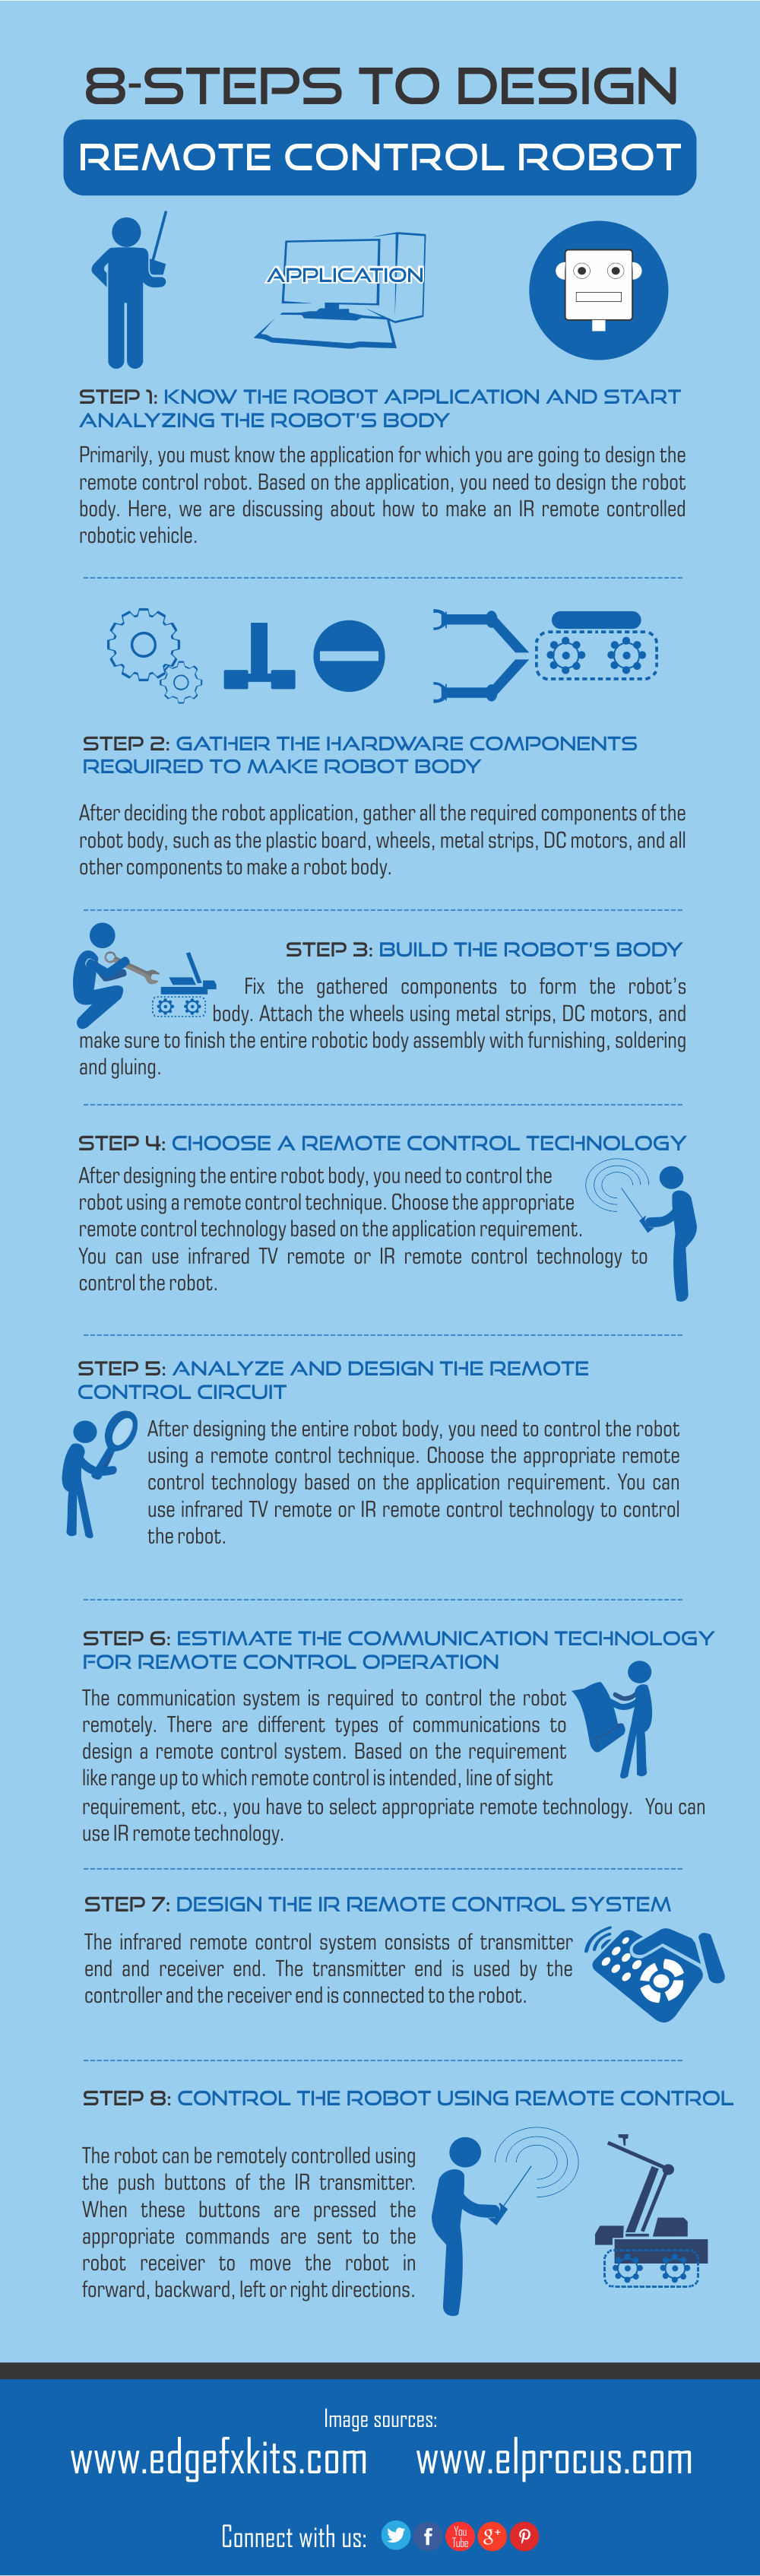 Infographic: 8 trinn for å lage en fjernkontroll robotkjøretøy